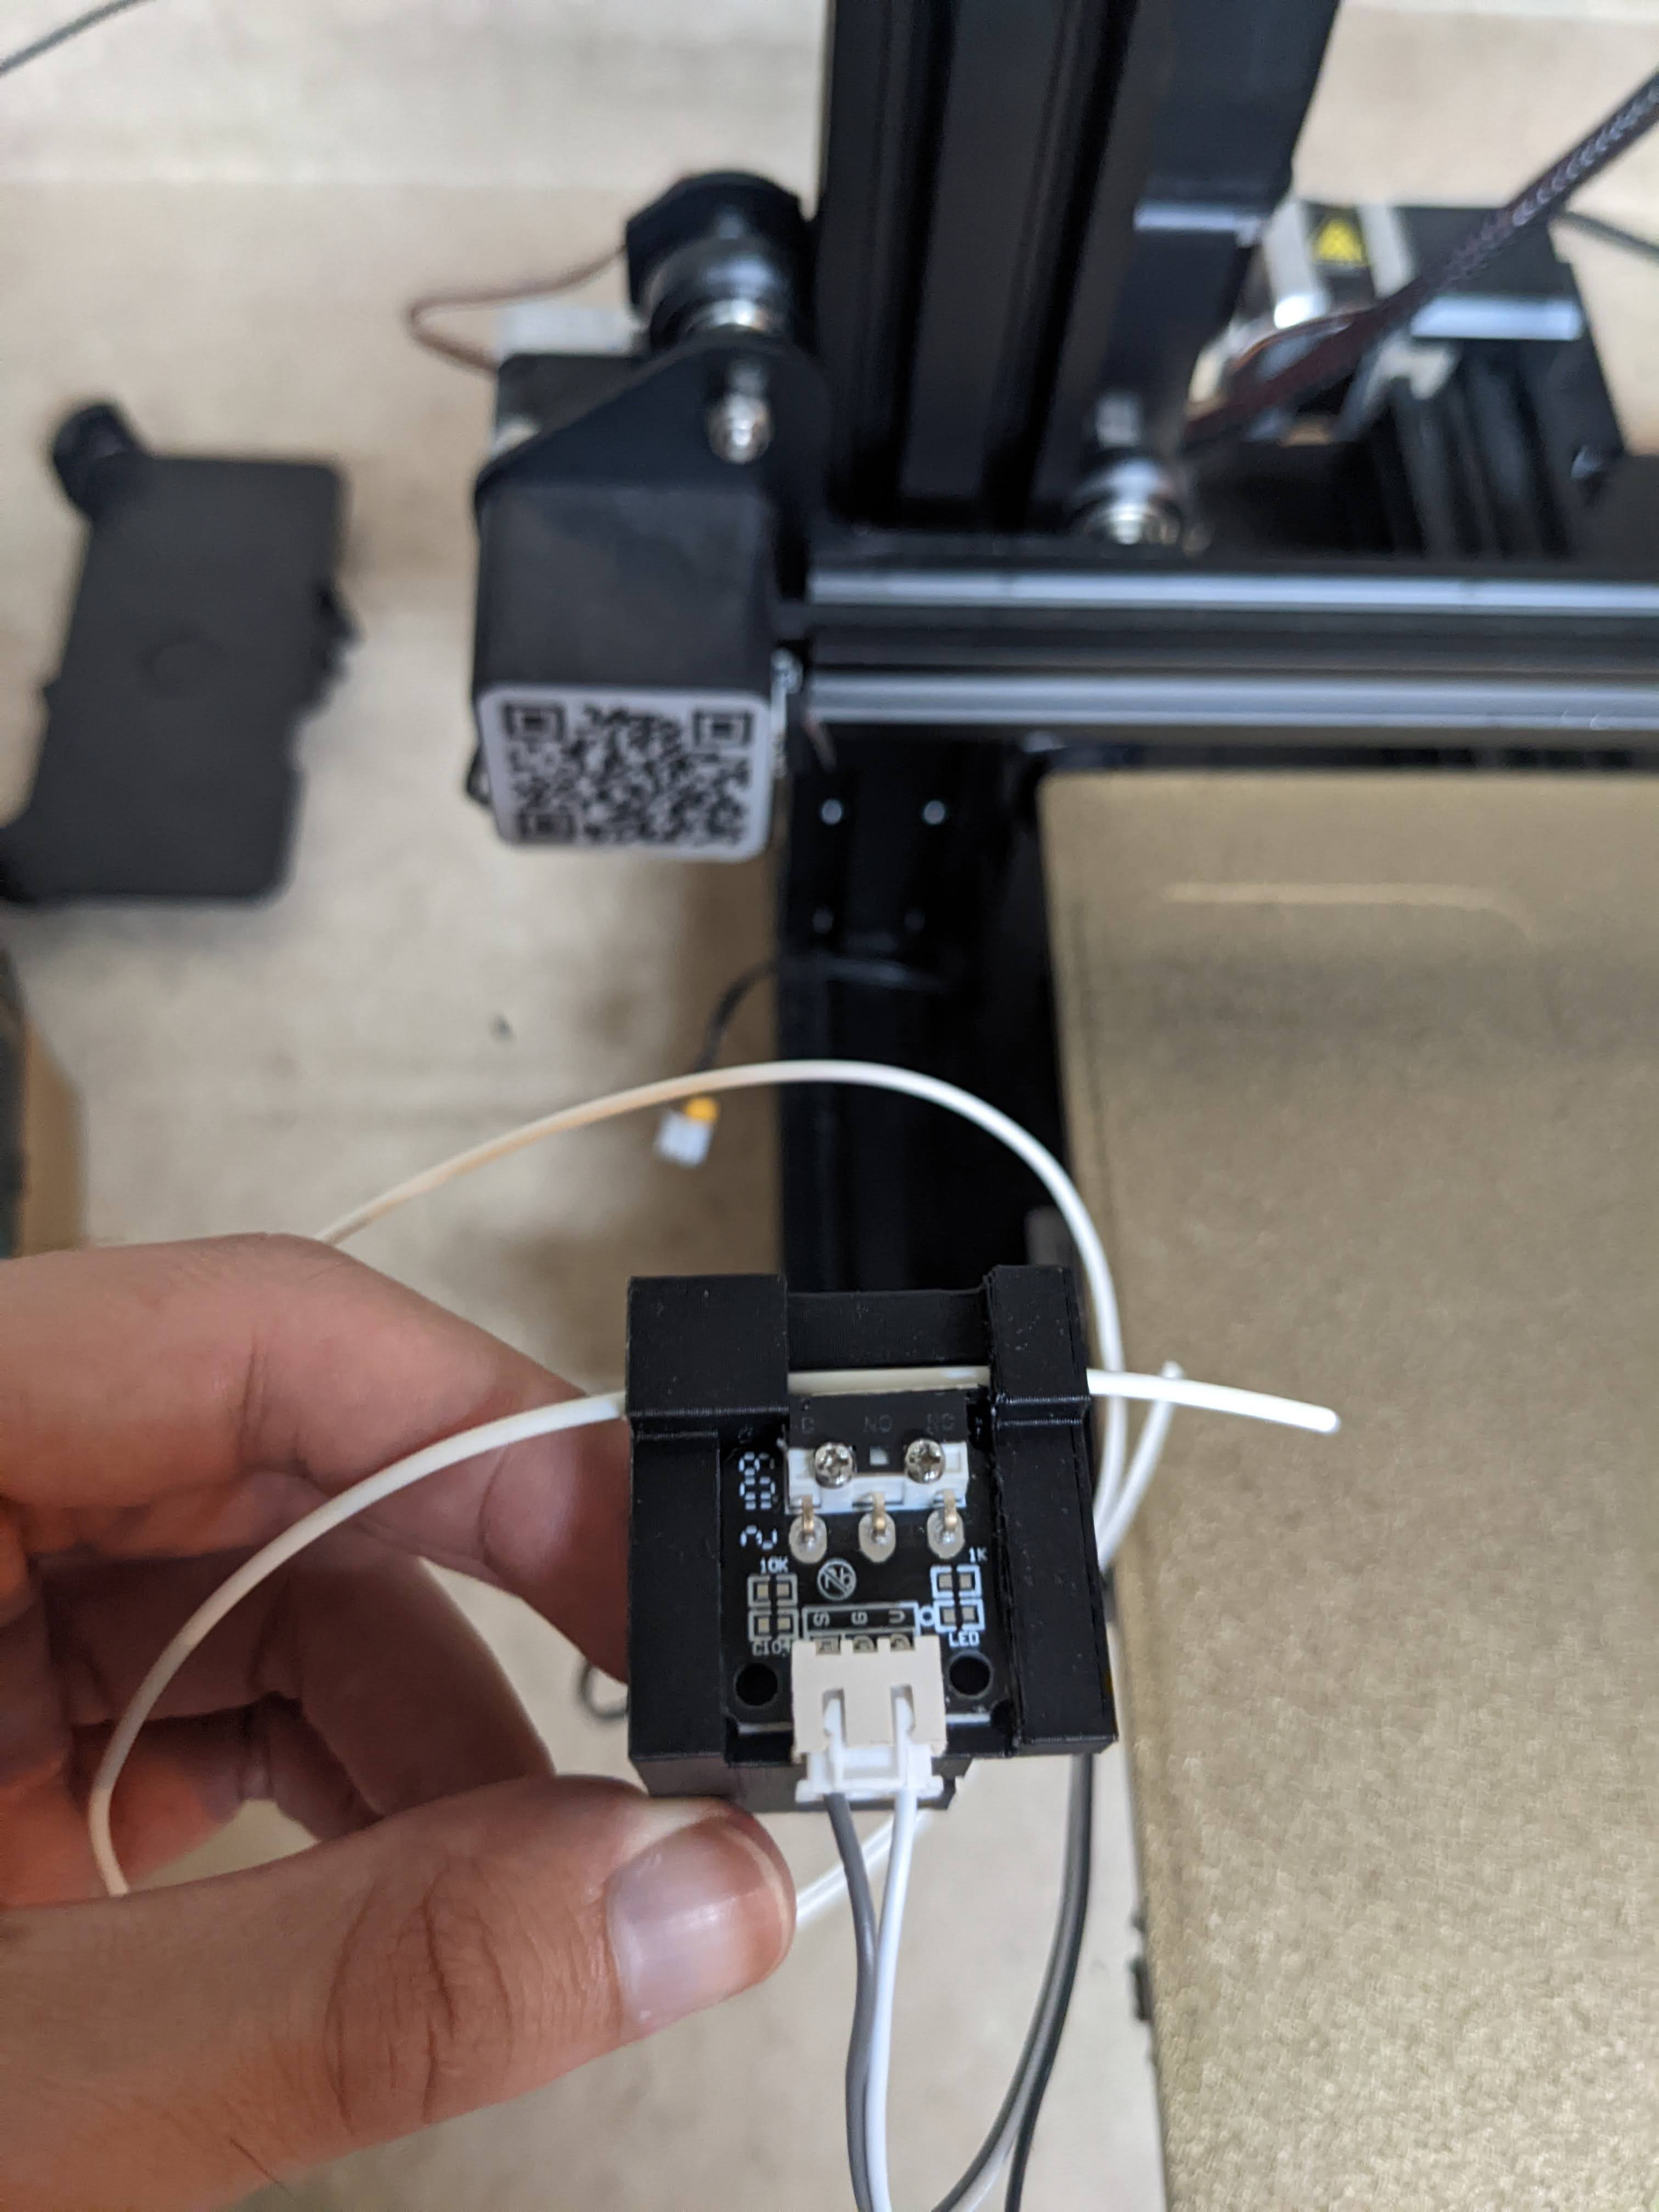 Ender 3v2 filament runout sensor